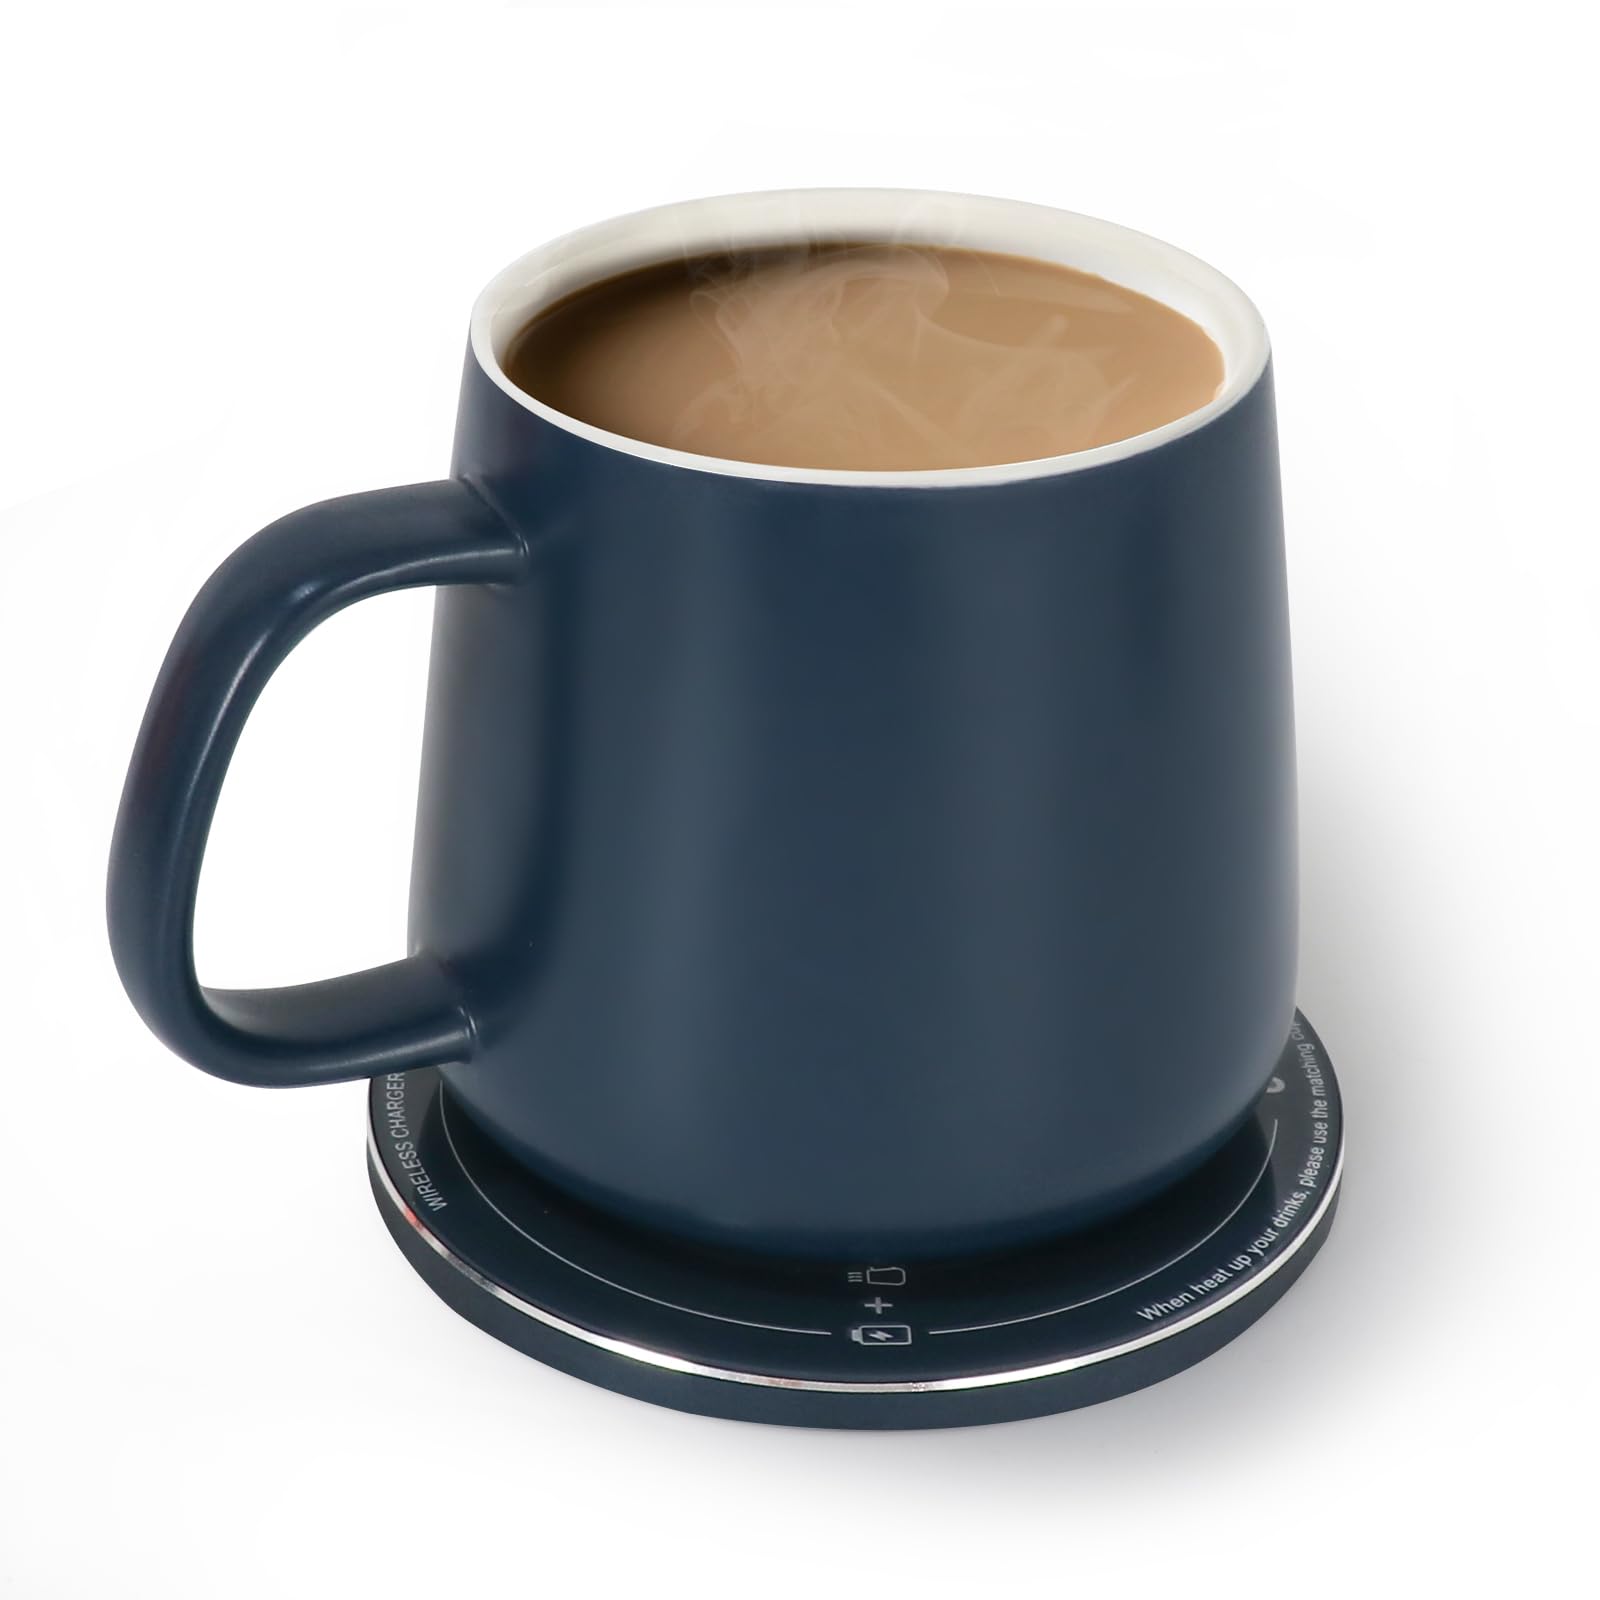 Achat APEKX Chauffe-Tasse, Tasse intelligente avec contrôle de la température avec couvercle, chauffe-tasse à café avec tasse pour bureau Chauffe Tasse Usb 13.3oz(Bleu) IFF5zDi7w bien vendre